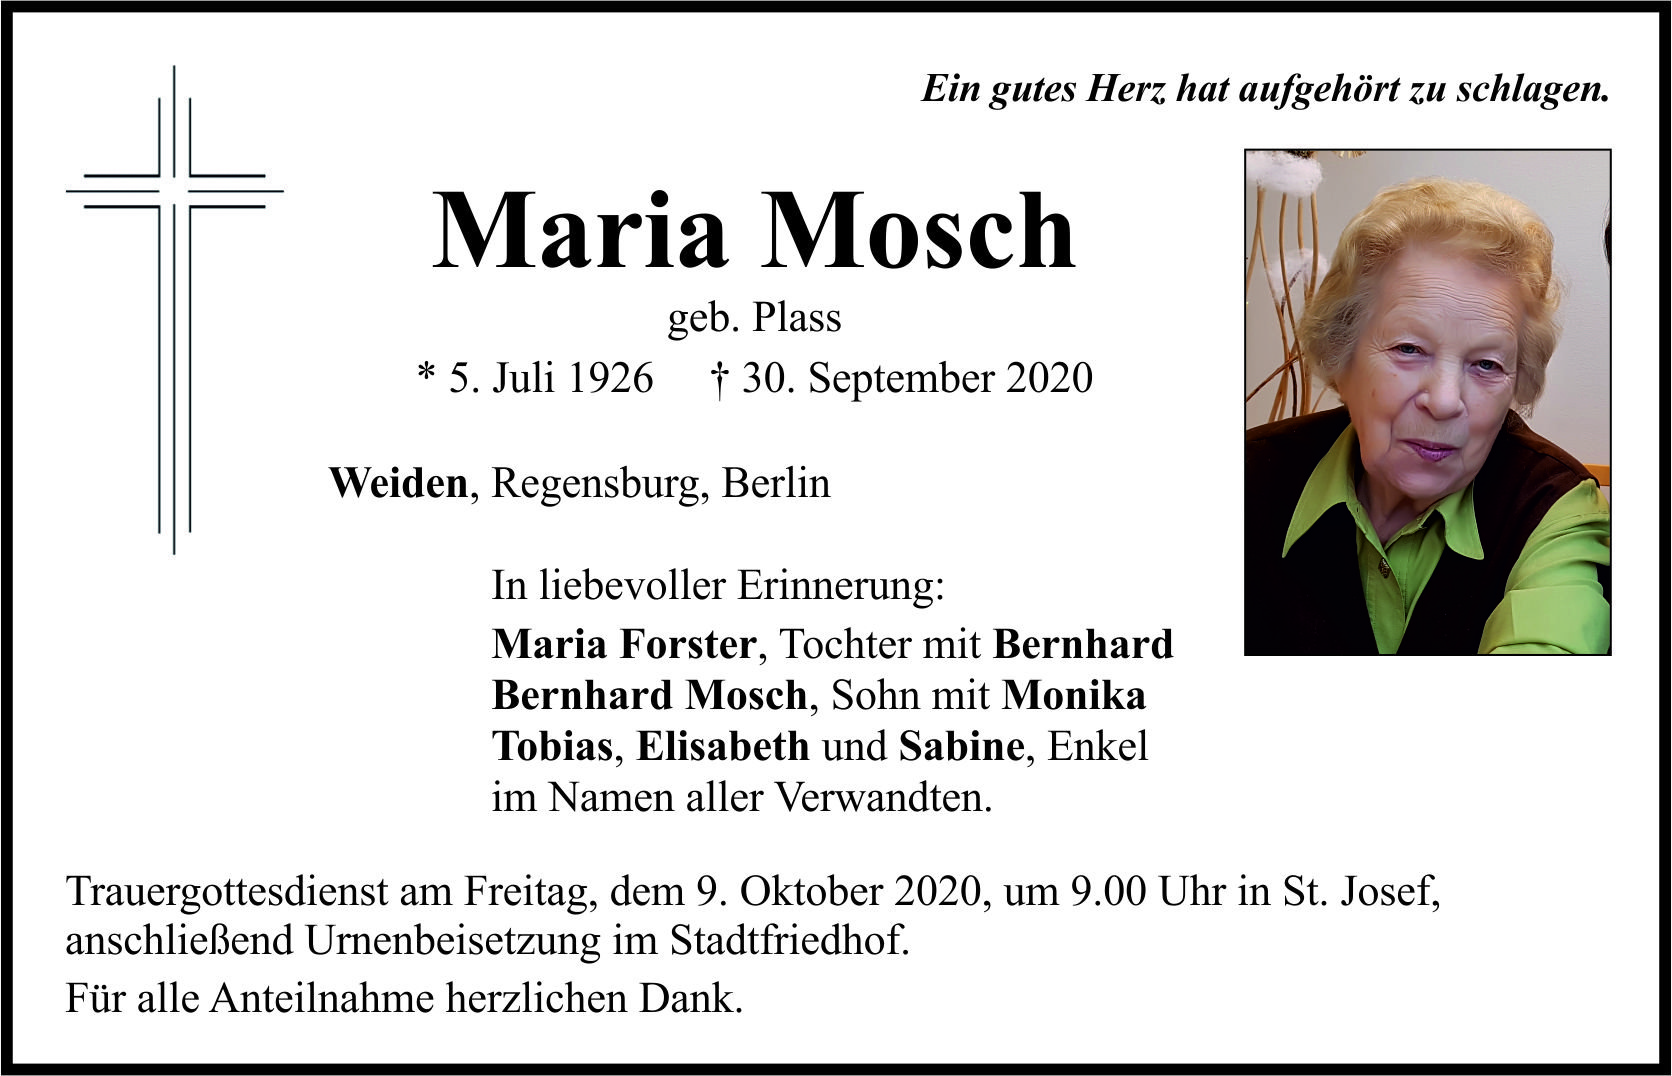 Traueranzeige Maria Mosch, Weiden